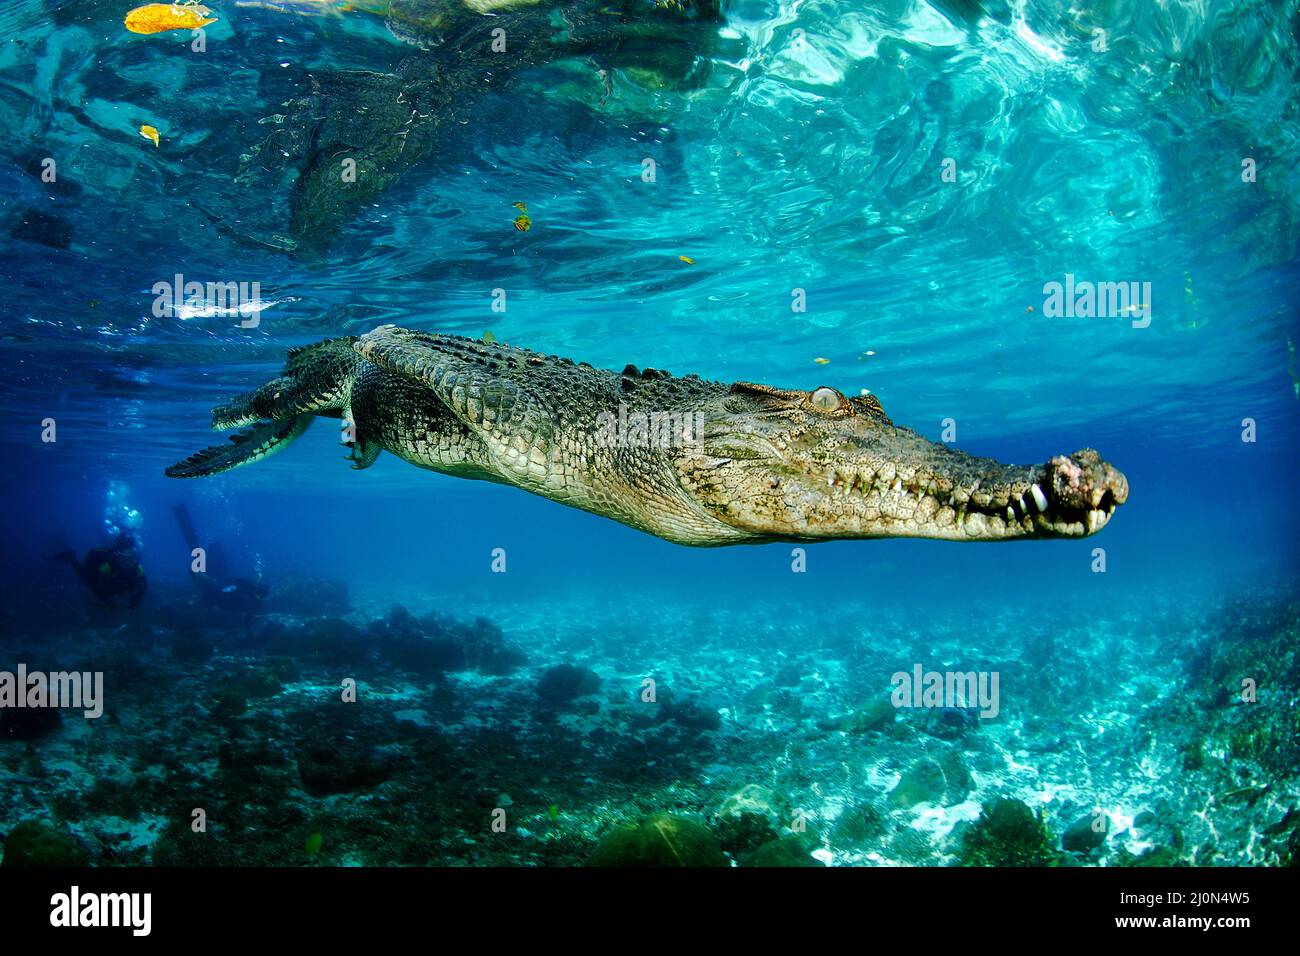 Salzwasserkrokodil (Crocodylus porosus), Palau, Mikronesien | cocodrilo de agua salada (Crocodylus porosus), el más grande de todos los reptiles vivos, Palau, Microne Foto de stock